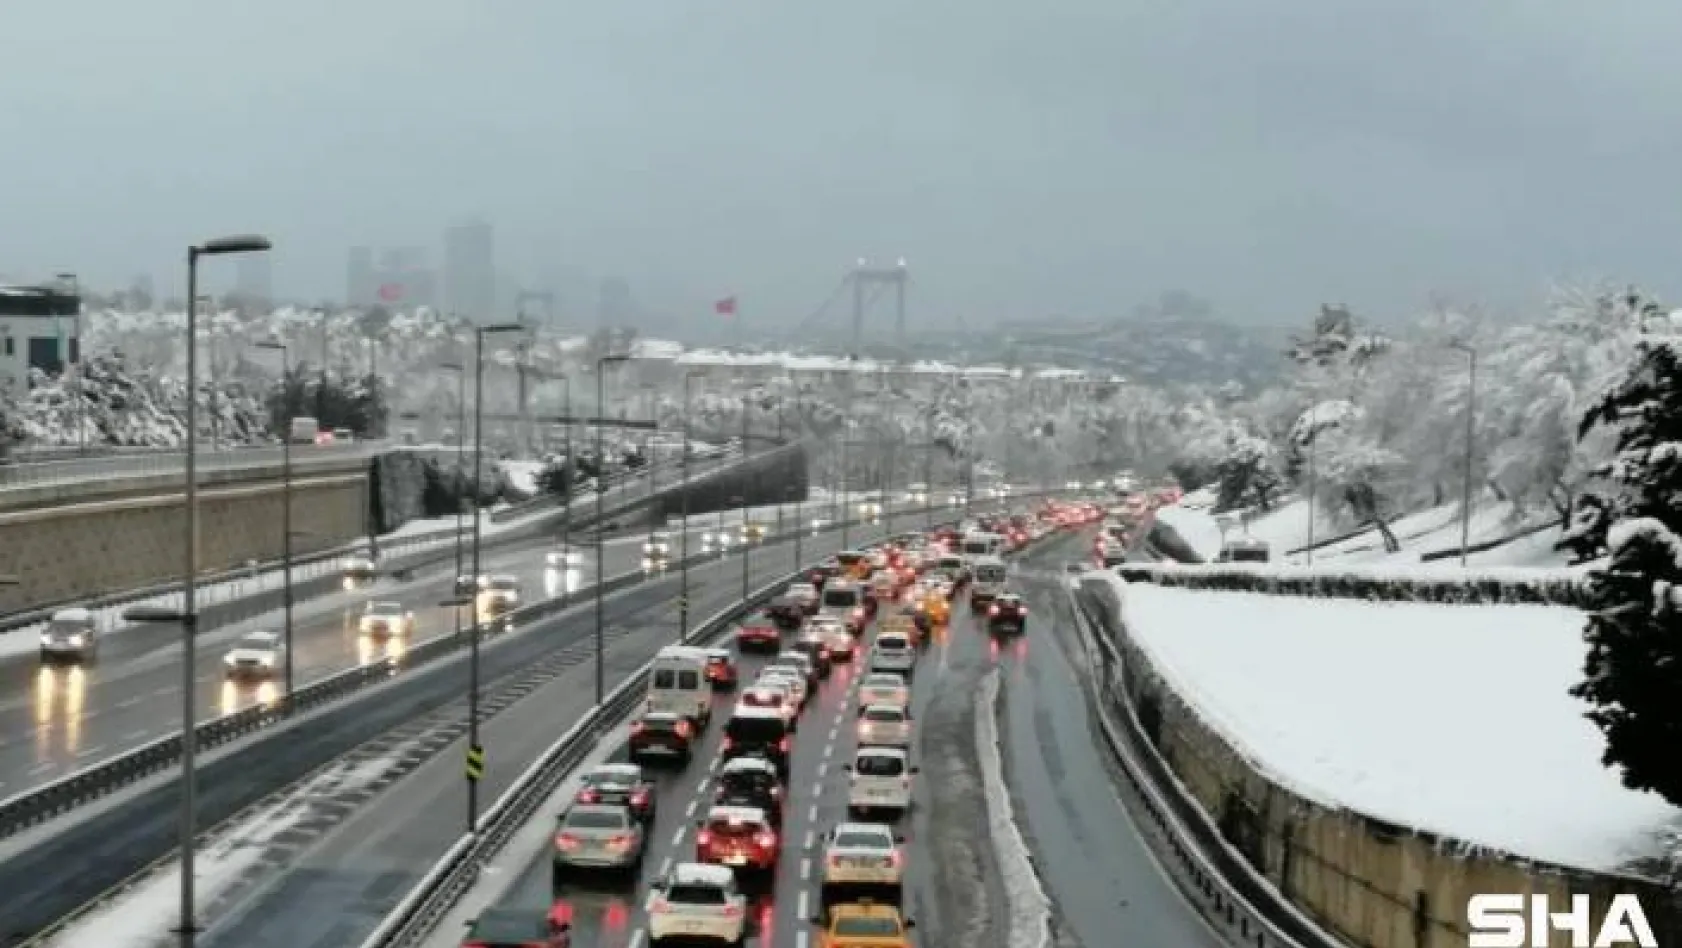 Kar yağışı ve 56 saatlik kısıtlama sonrası 15 Temmuz Şehitler Köprüsü'nde trafik yoğunluğu